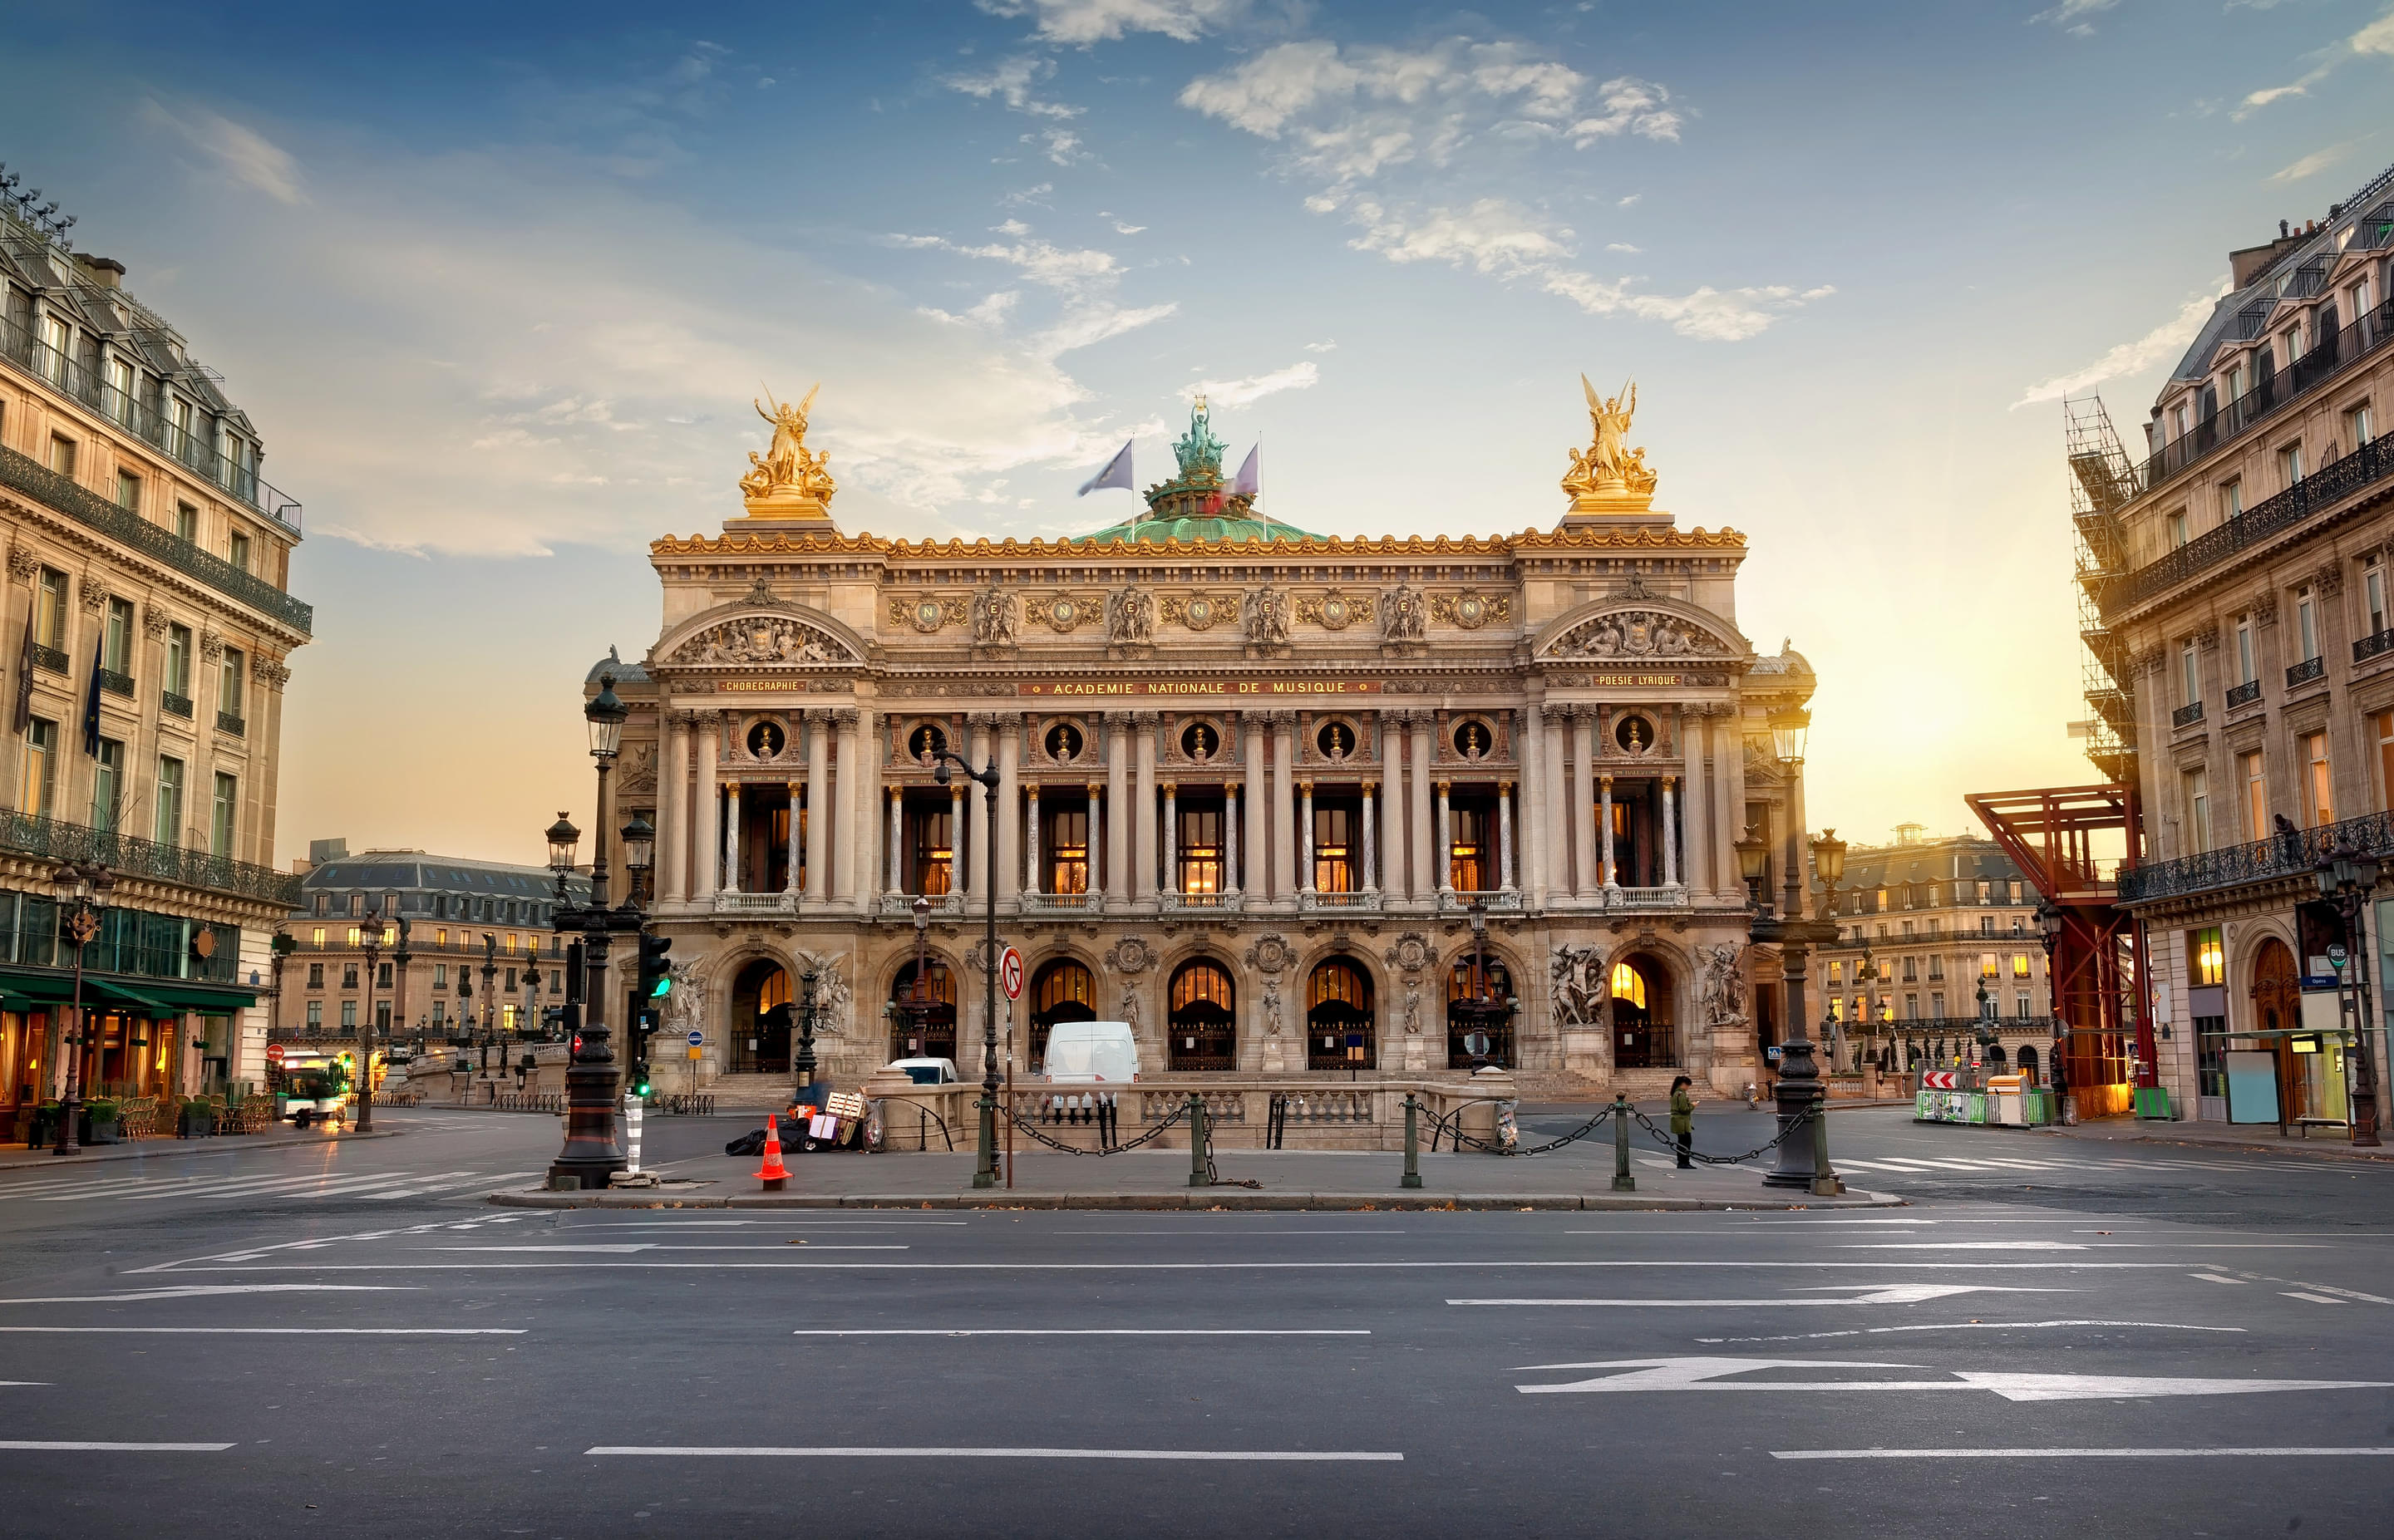 Palais Garnier (The Opéra Garnier Grand Hall) Overview